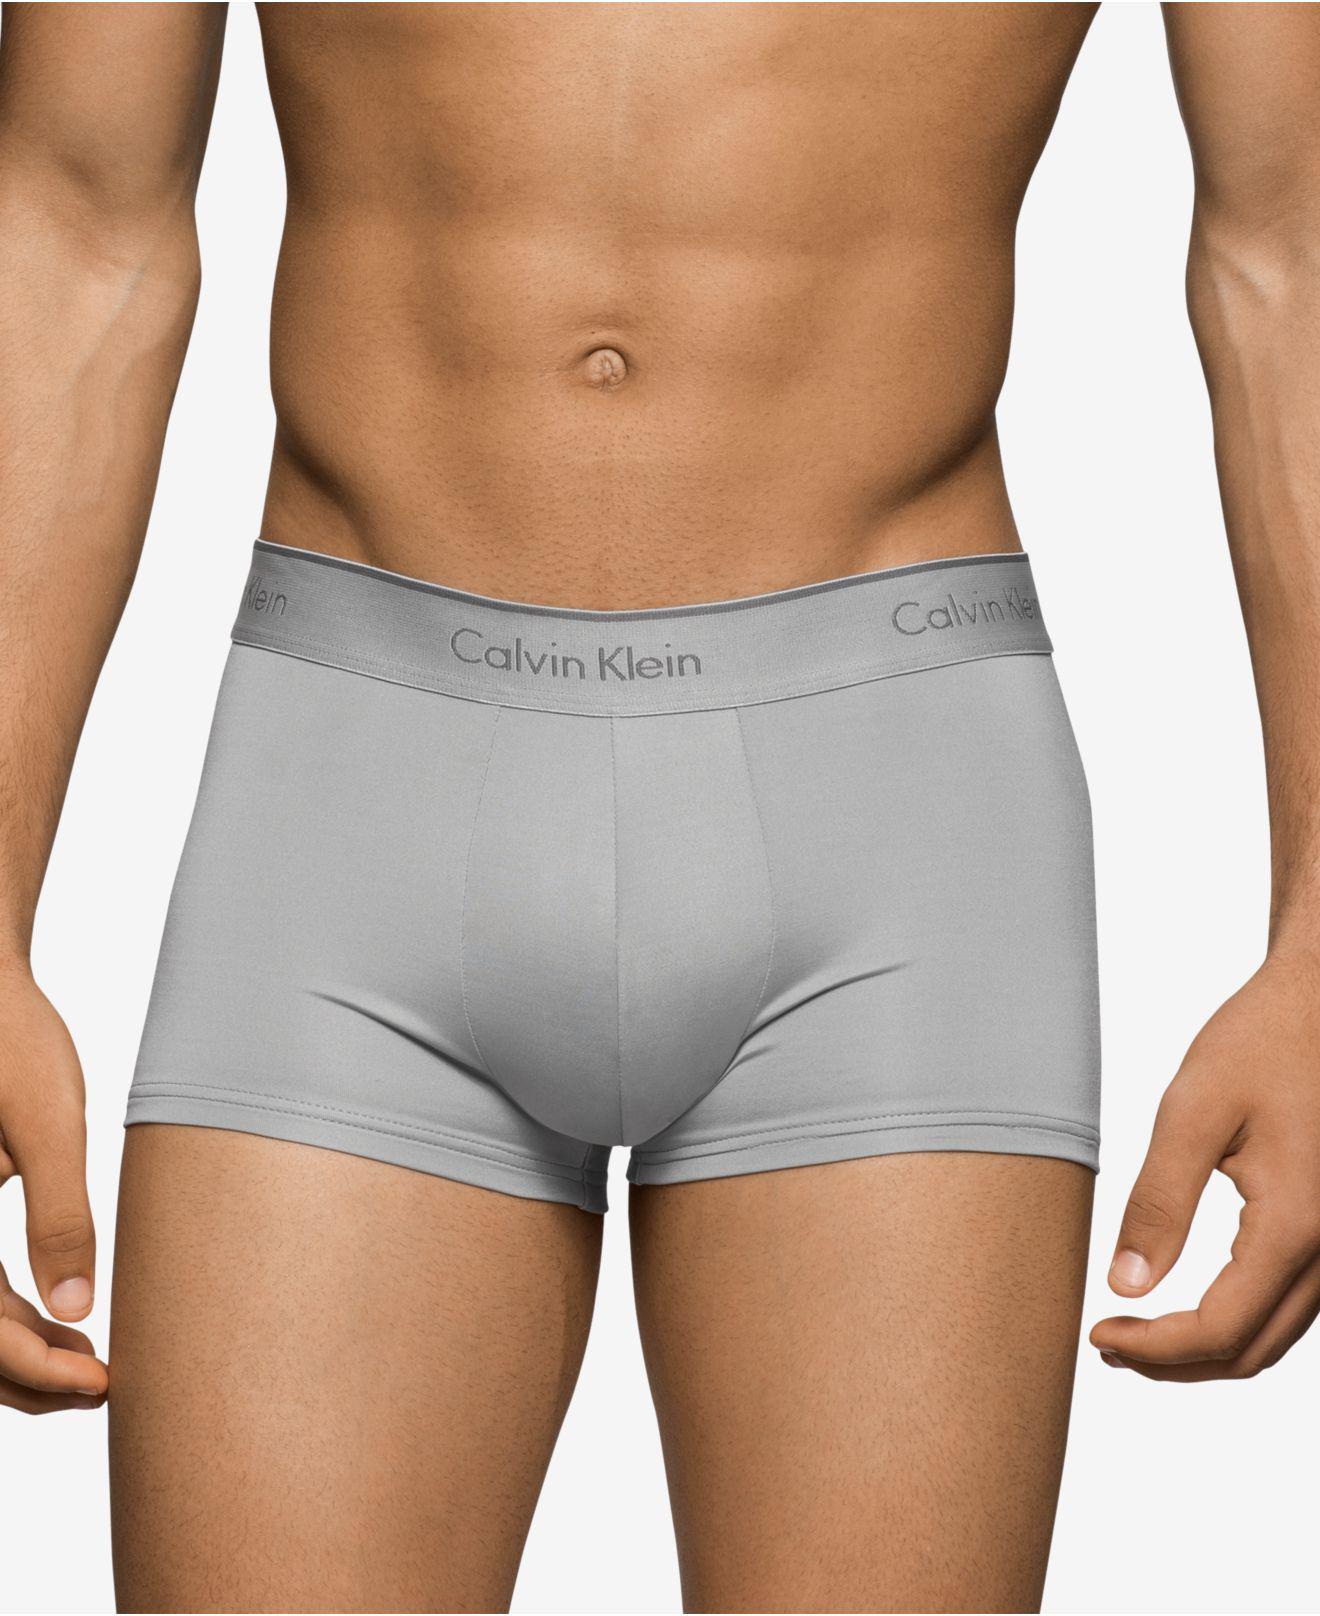 Calvin Klein Men's Boxer Briefs Athletic Trunk CK U8316 Microfiber Underwear  New